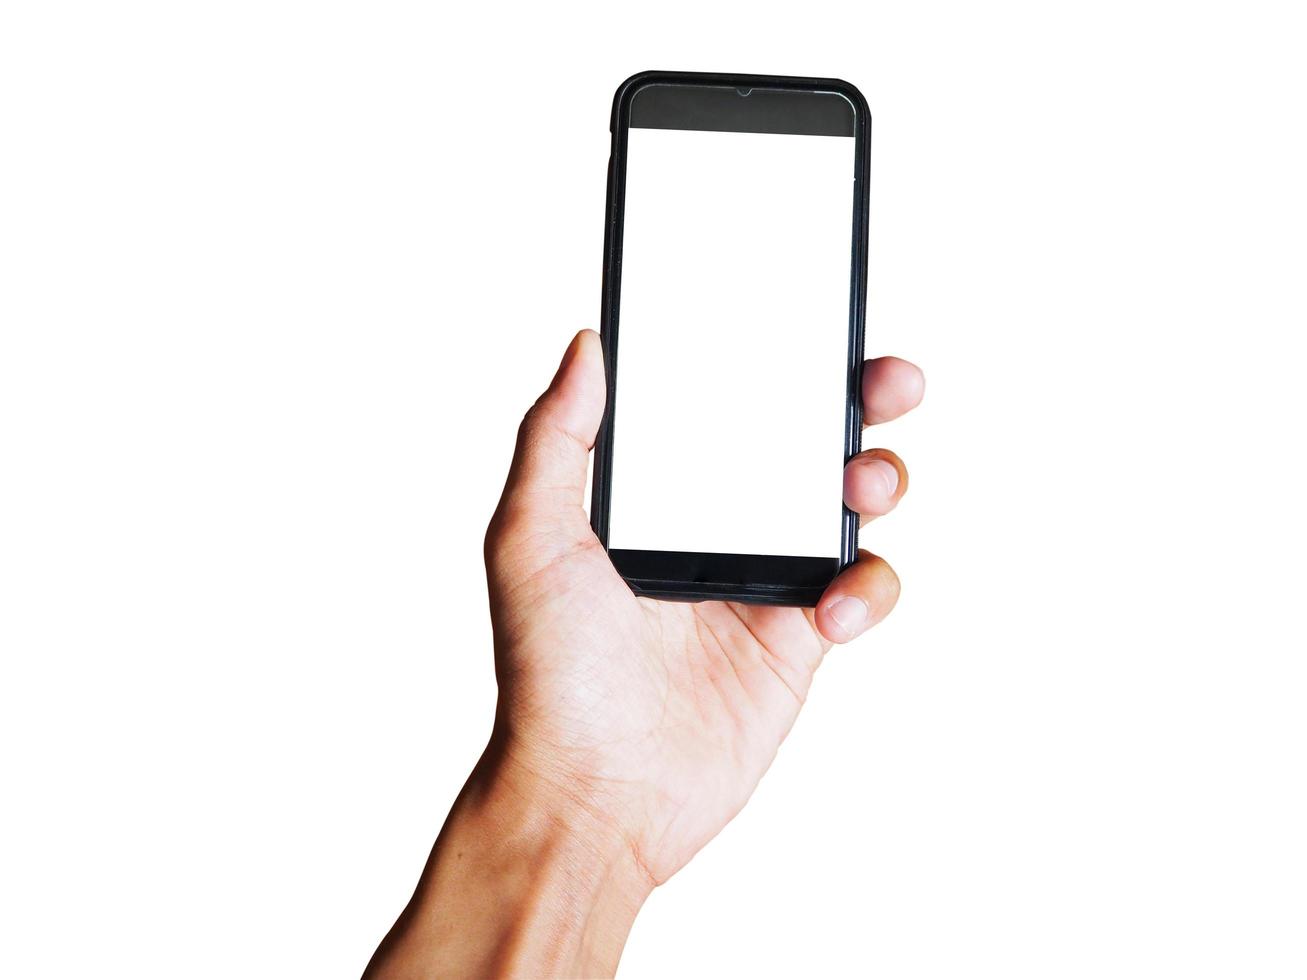 main de jeune homme tenant un smartphone noir avec écran blanc isolé sur fond blanc. espace pour le texte ou la conception photo